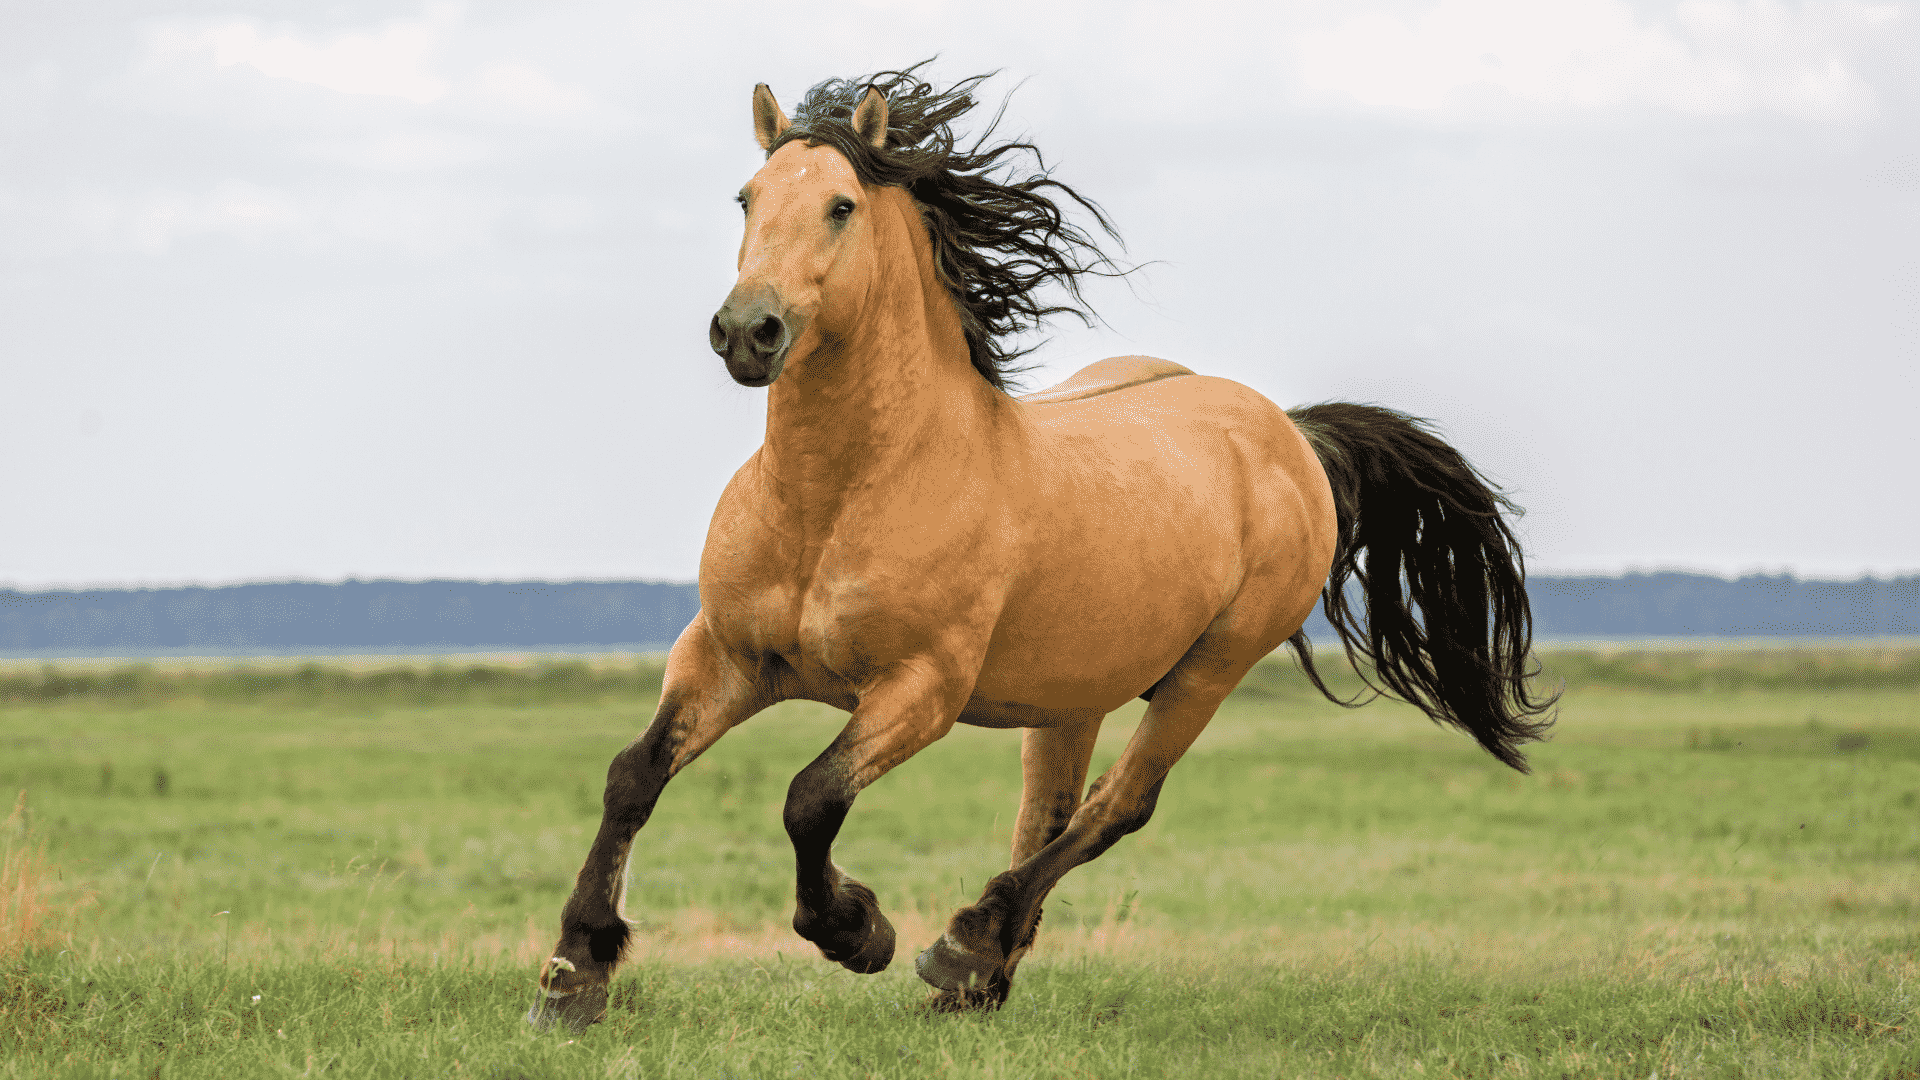 Sonhar com cavalo: o que significa? É bom ou ruim?